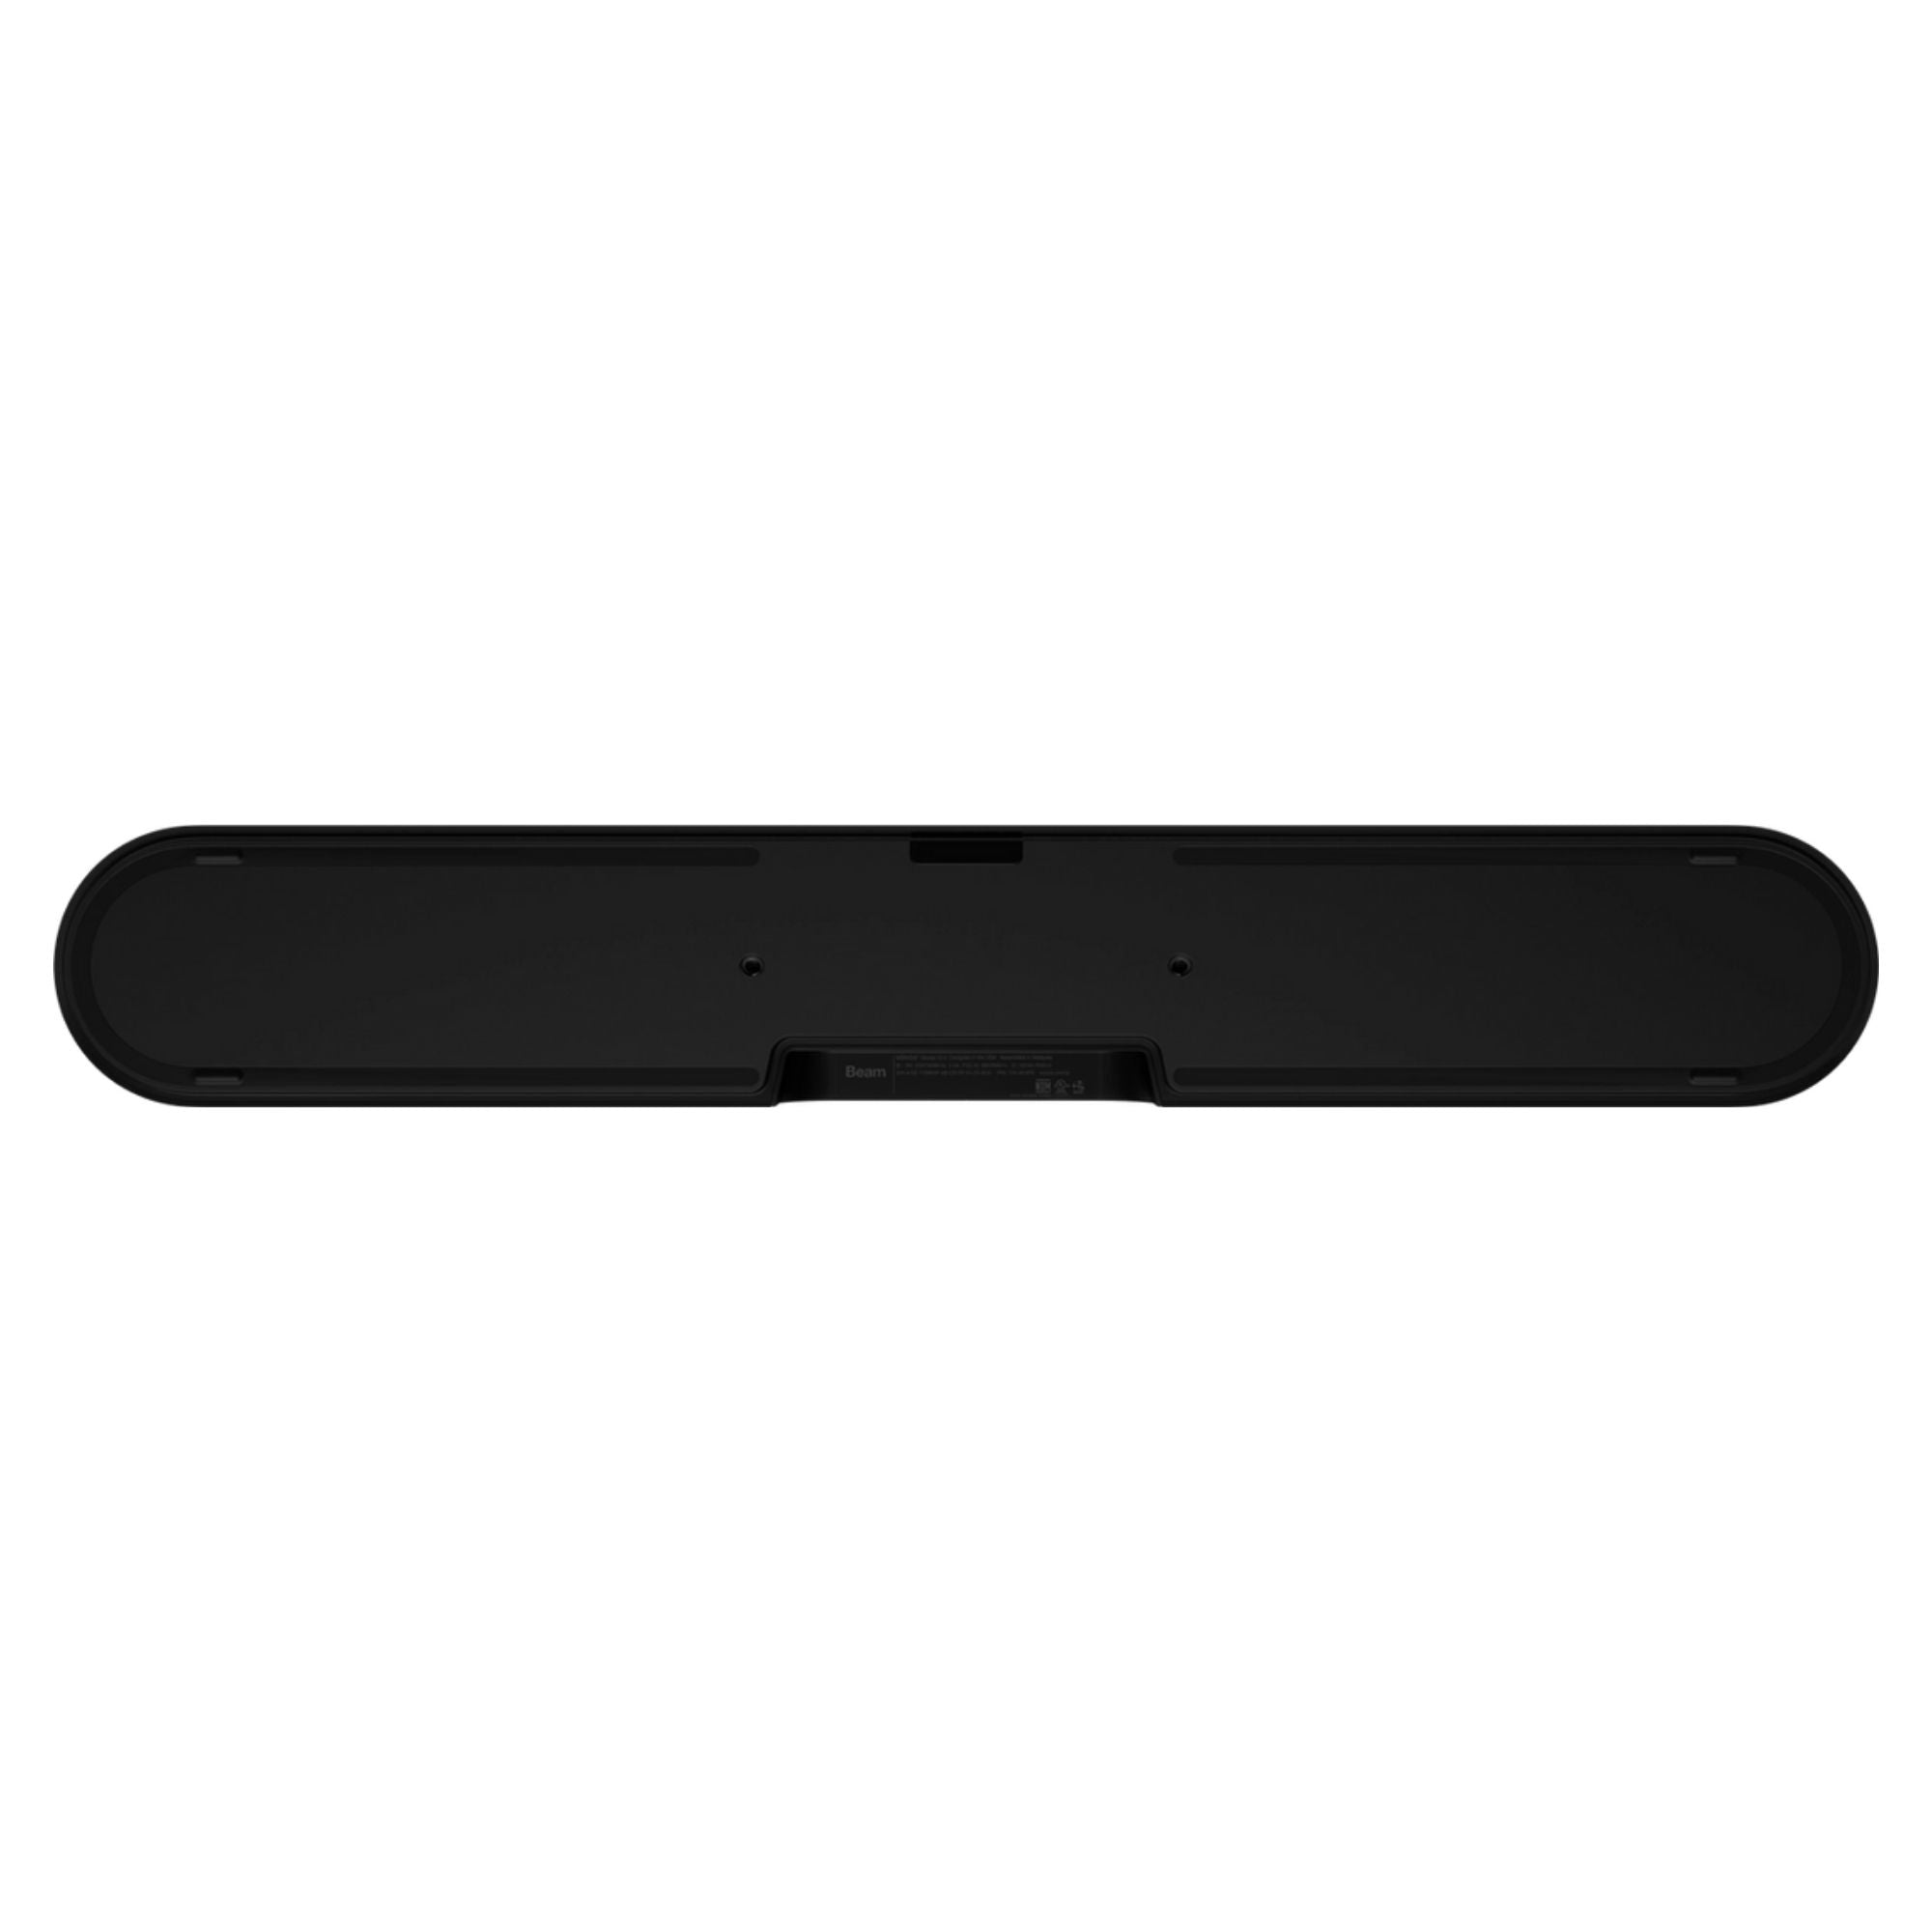 Sonos Beam (Gen 2) - Soundbar - AVStore